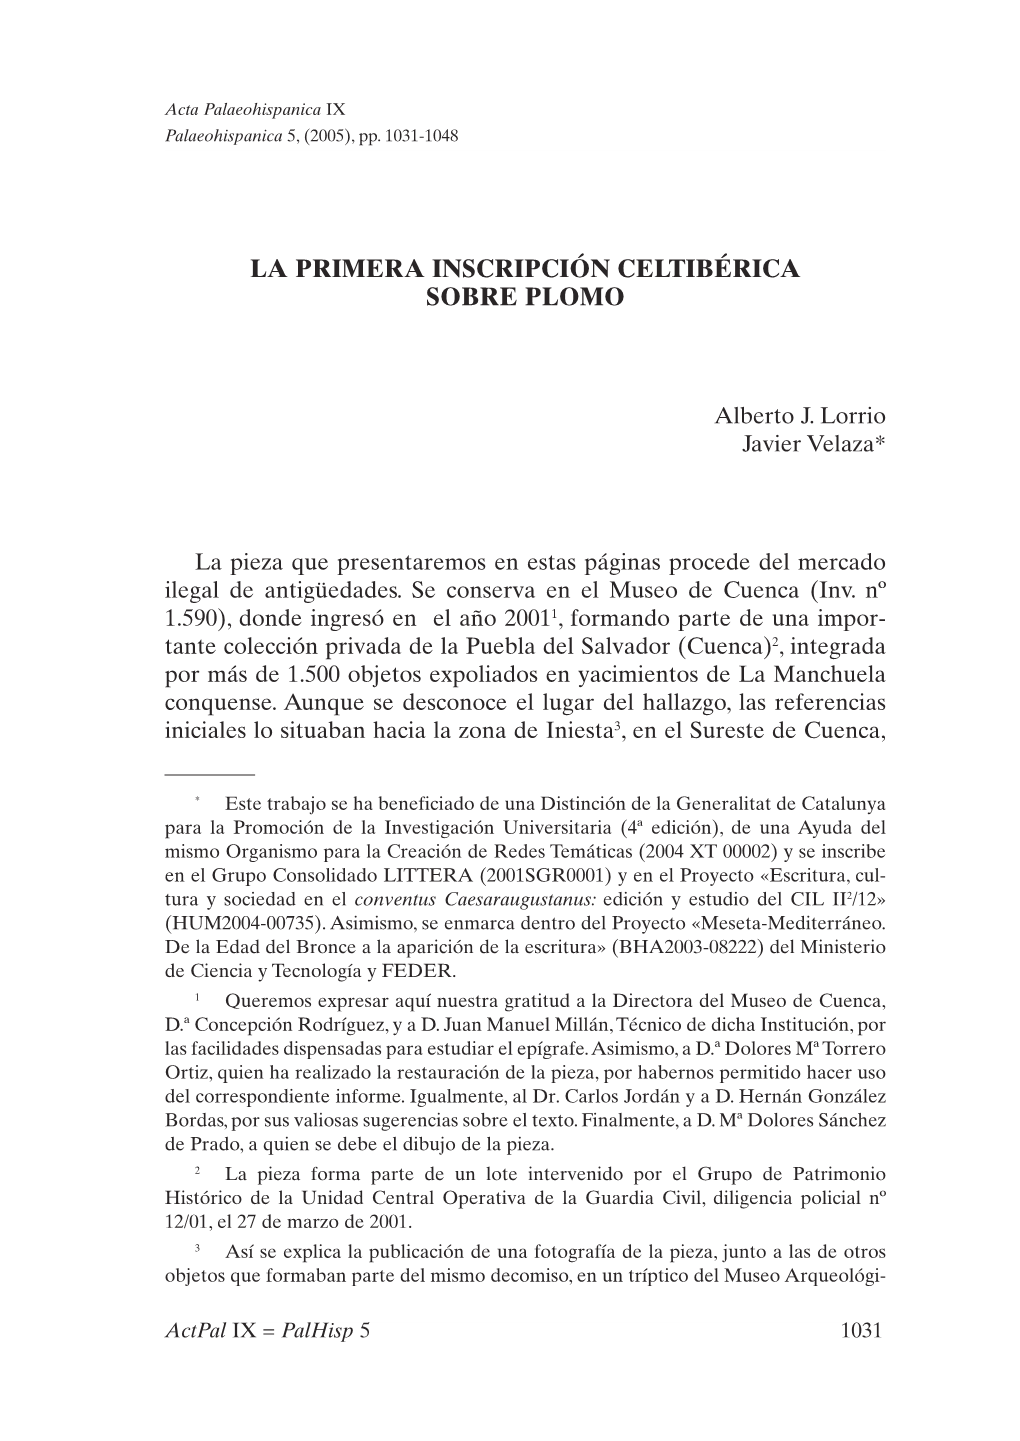 45. La Primera Inscripción Celtibérica Sobre Plomo, Por Alberto J. Lorrio Y